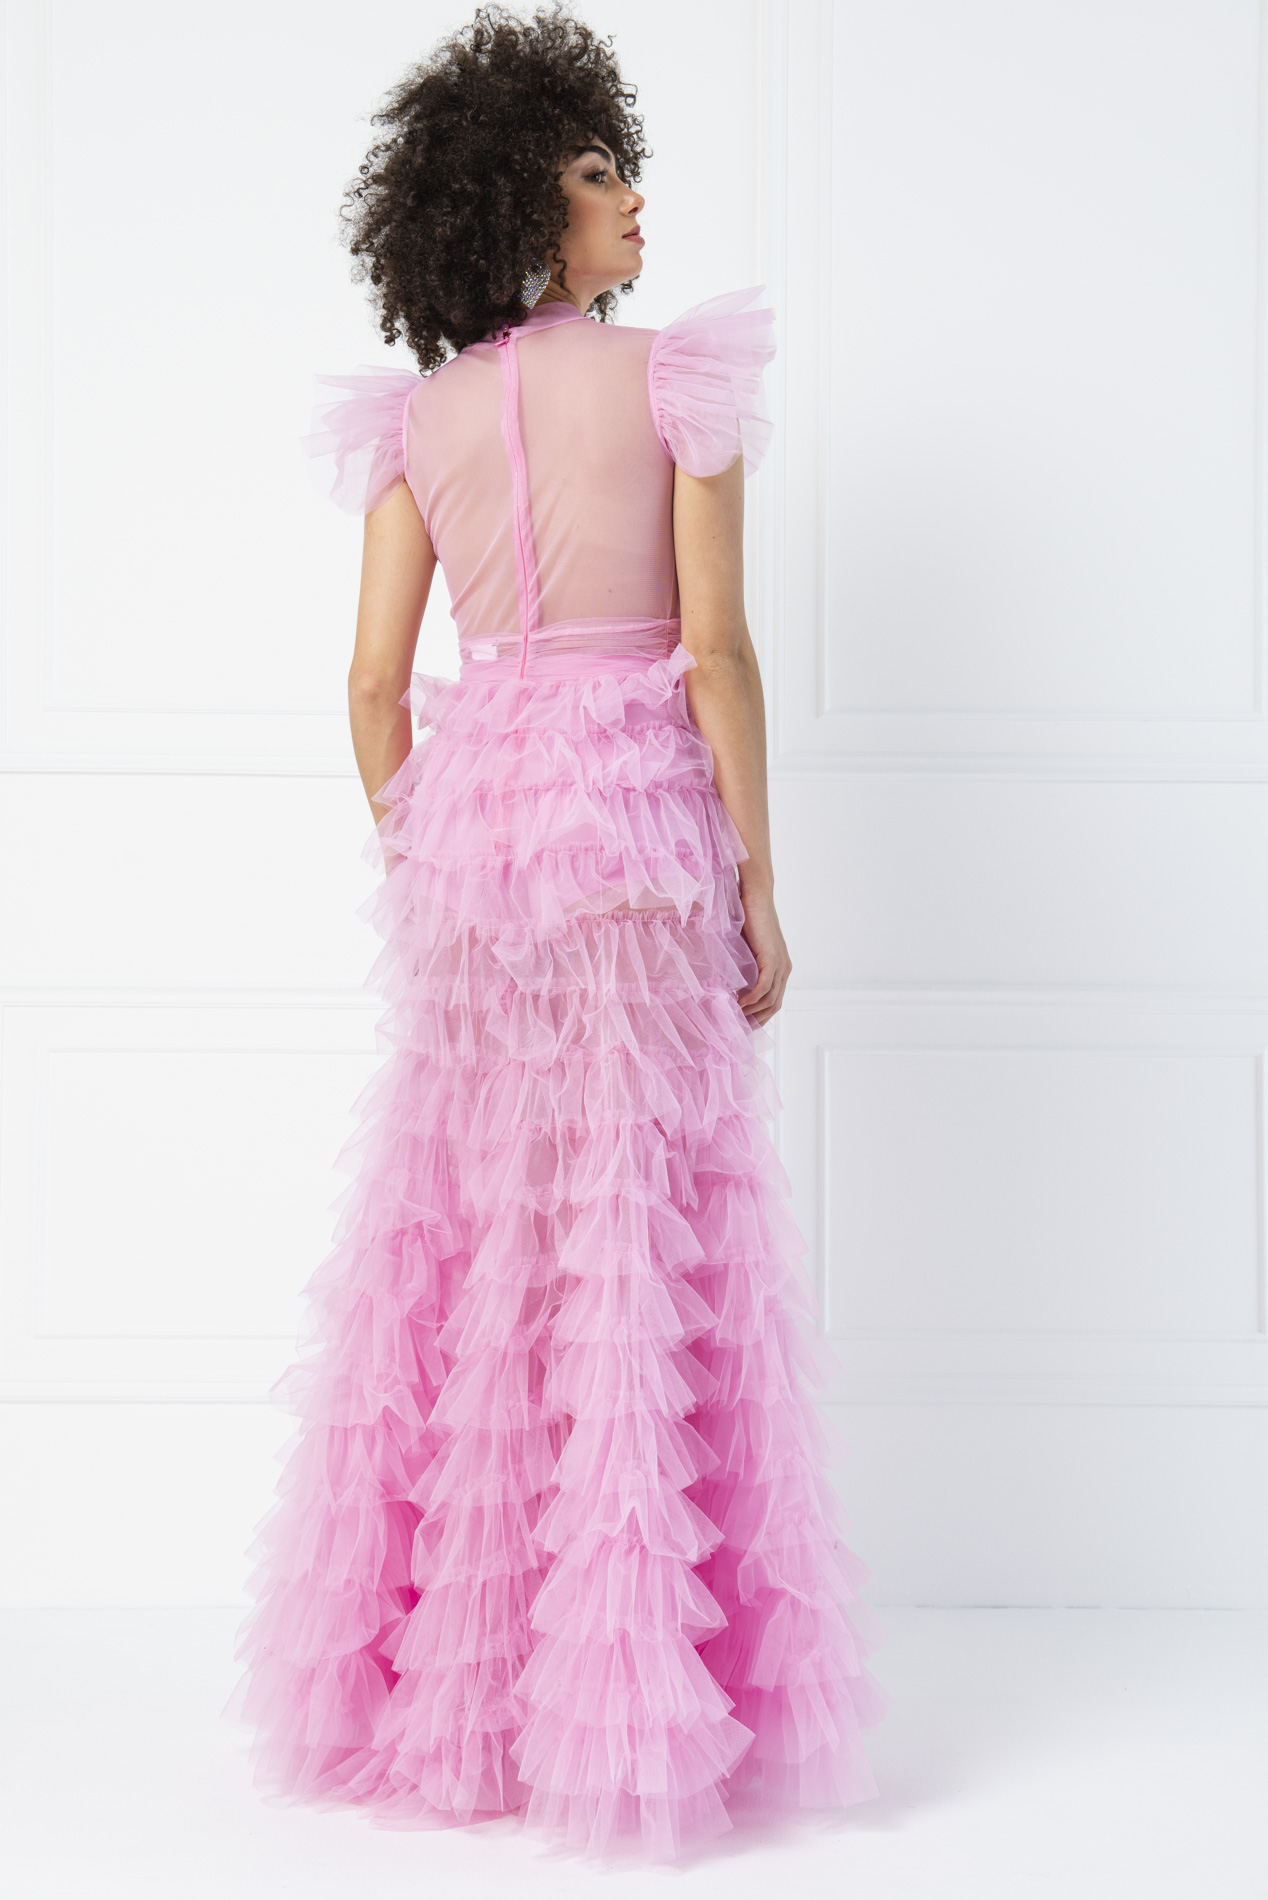 Прозрачное платье из Тюля Pink Длинное платье